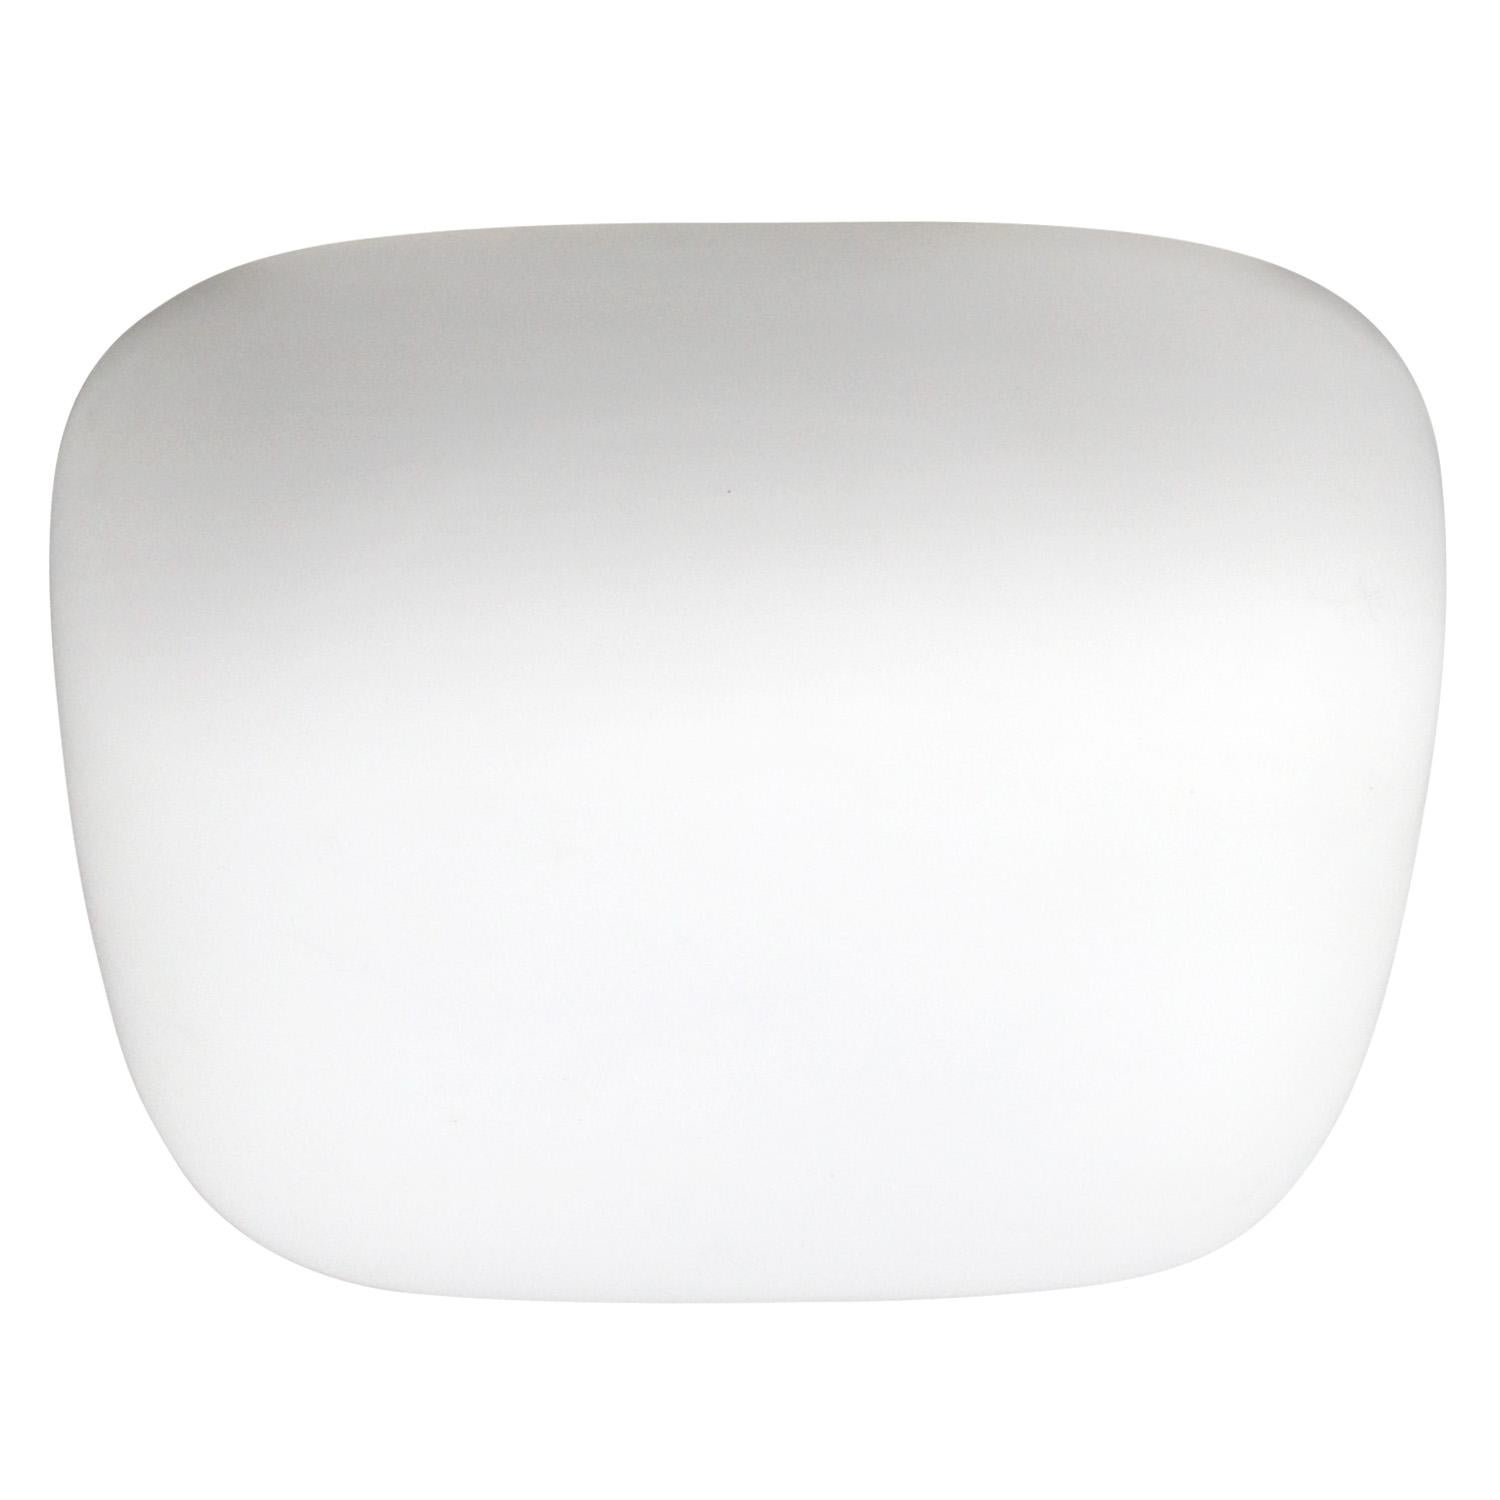 Deutsche Opaline Industrie-Deckenleuchte

Metallsockel mit weißem, mattem Opalglas

Größe Wandteller 25 × 7,5 cm

Gewicht: 1,70 kg / 3,7 lb

Der Preis gilt für jeden einzelnen Artikel. Alle Lampen sind nach internationalen Normen für Glühbirnen,